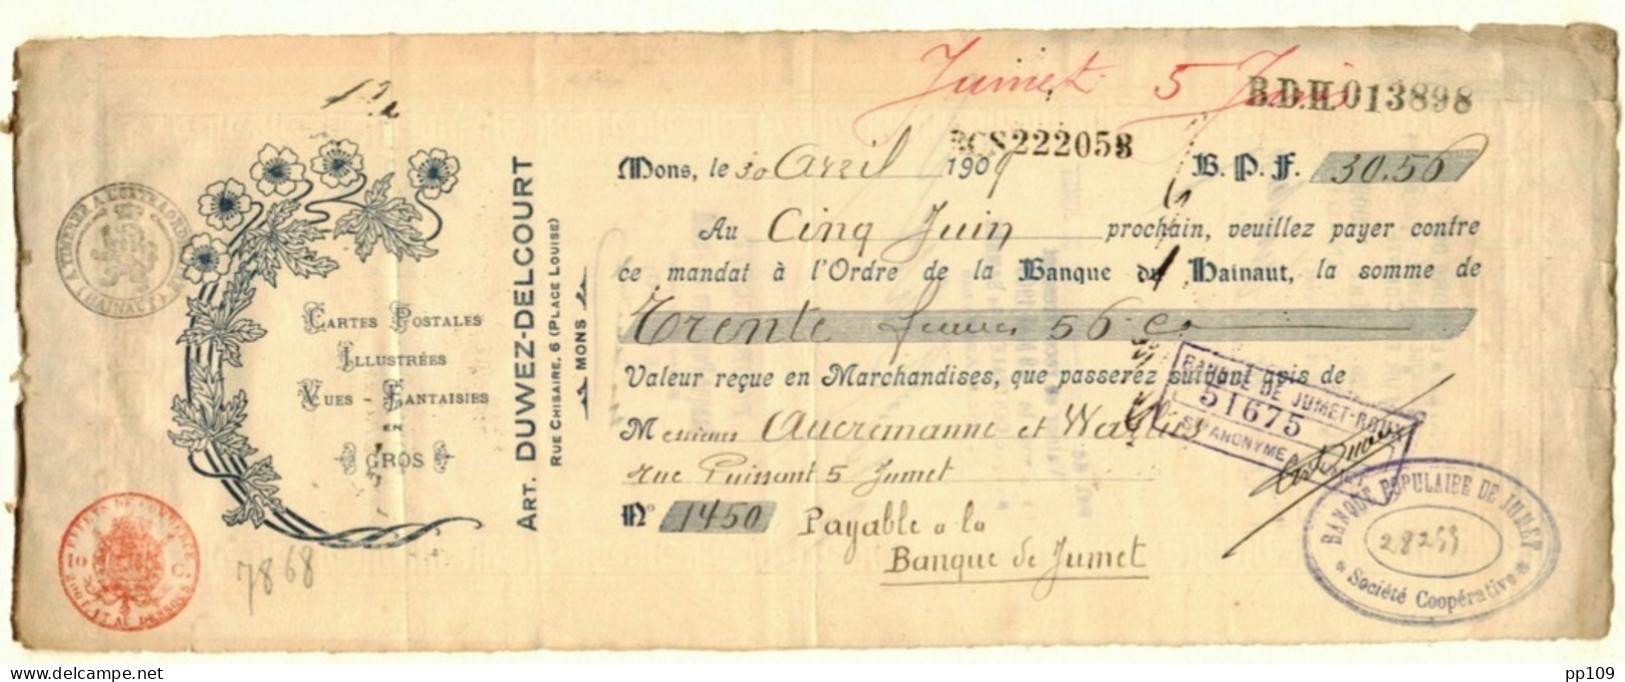 MONS Place Louise, 6 Mandat   Ill. Cartes Postales + Vues Arthur DUWEZ DELCOURT 30 IV 1909 - Dokumente